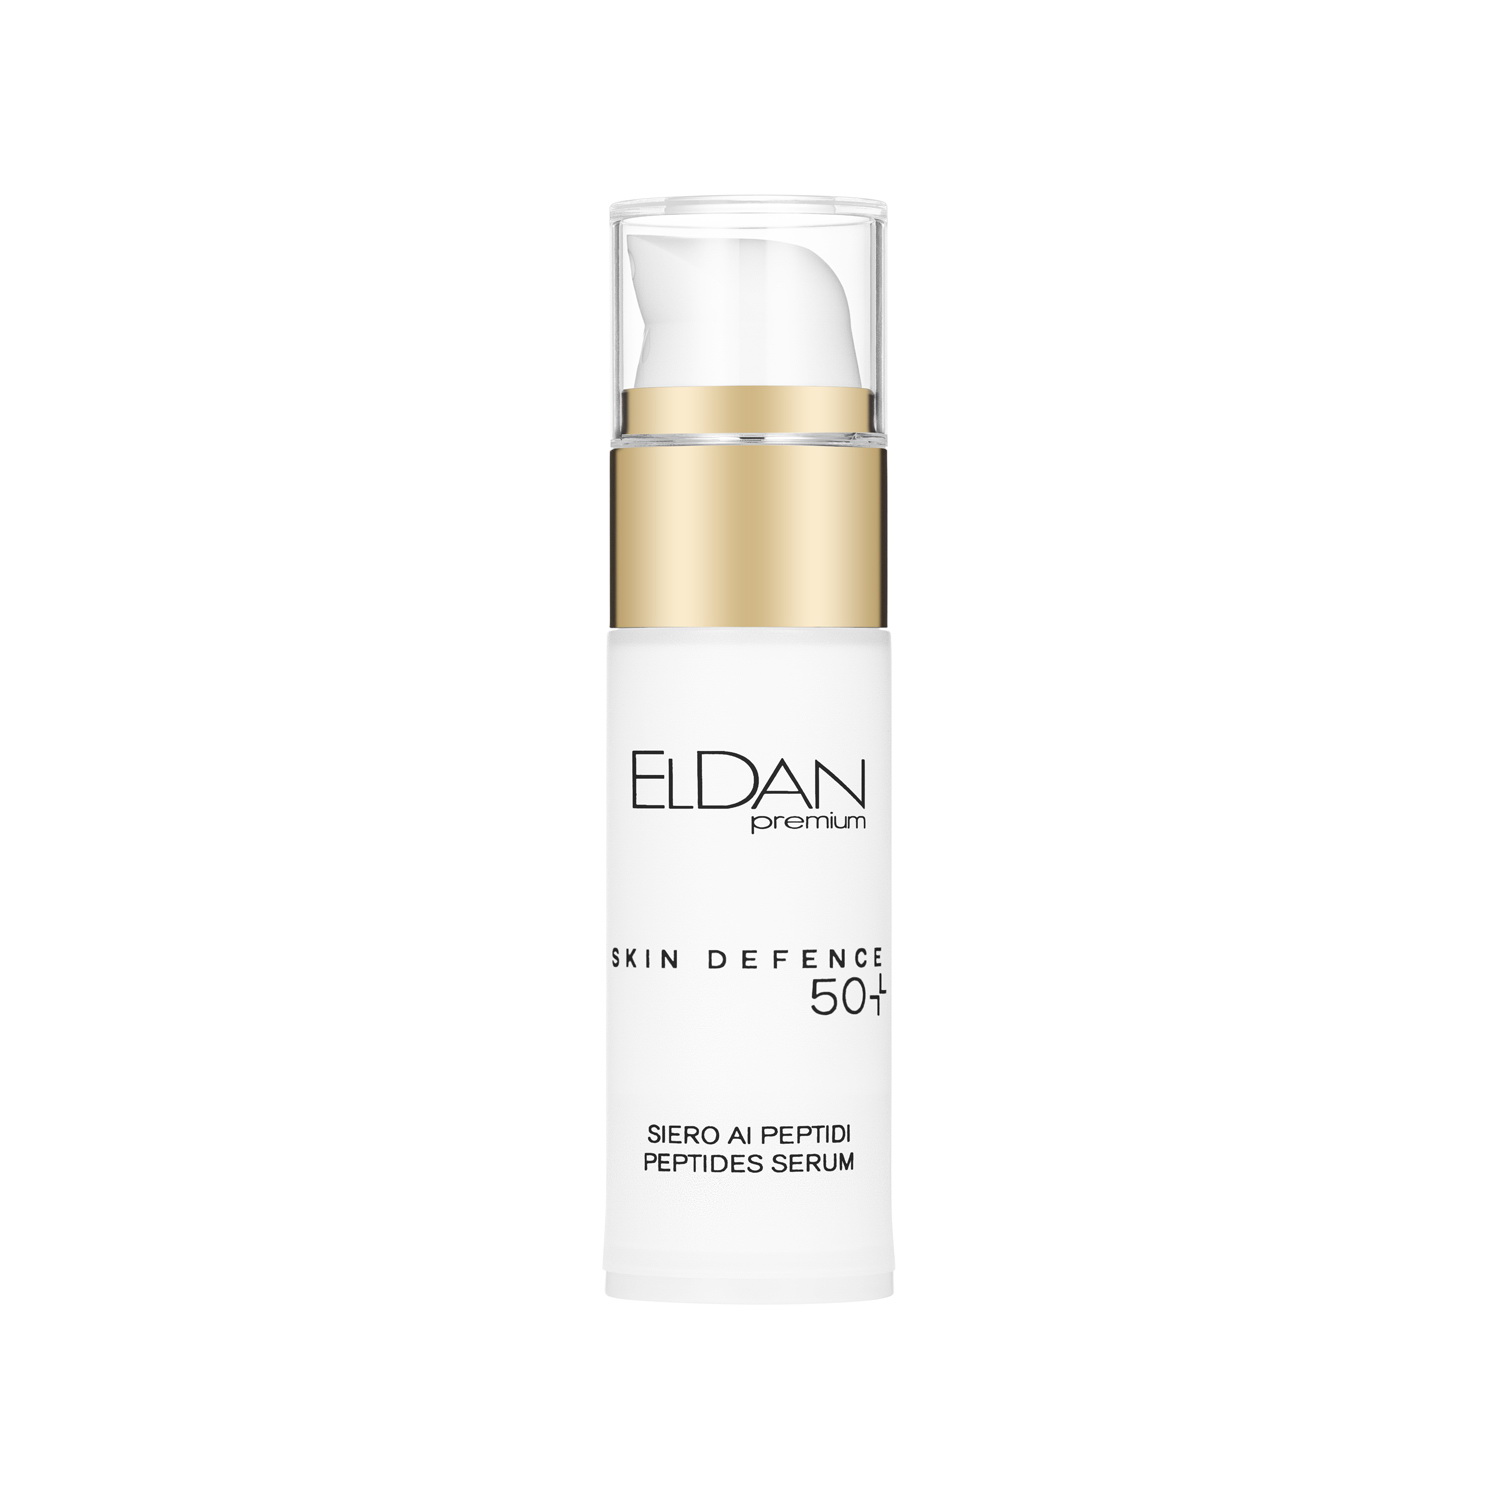 Сыворотка для лица ELDAN Premium Pepto Skin Defence 50+ пептидная, антивозрастная, 30 мл пептидная сыворотка 40